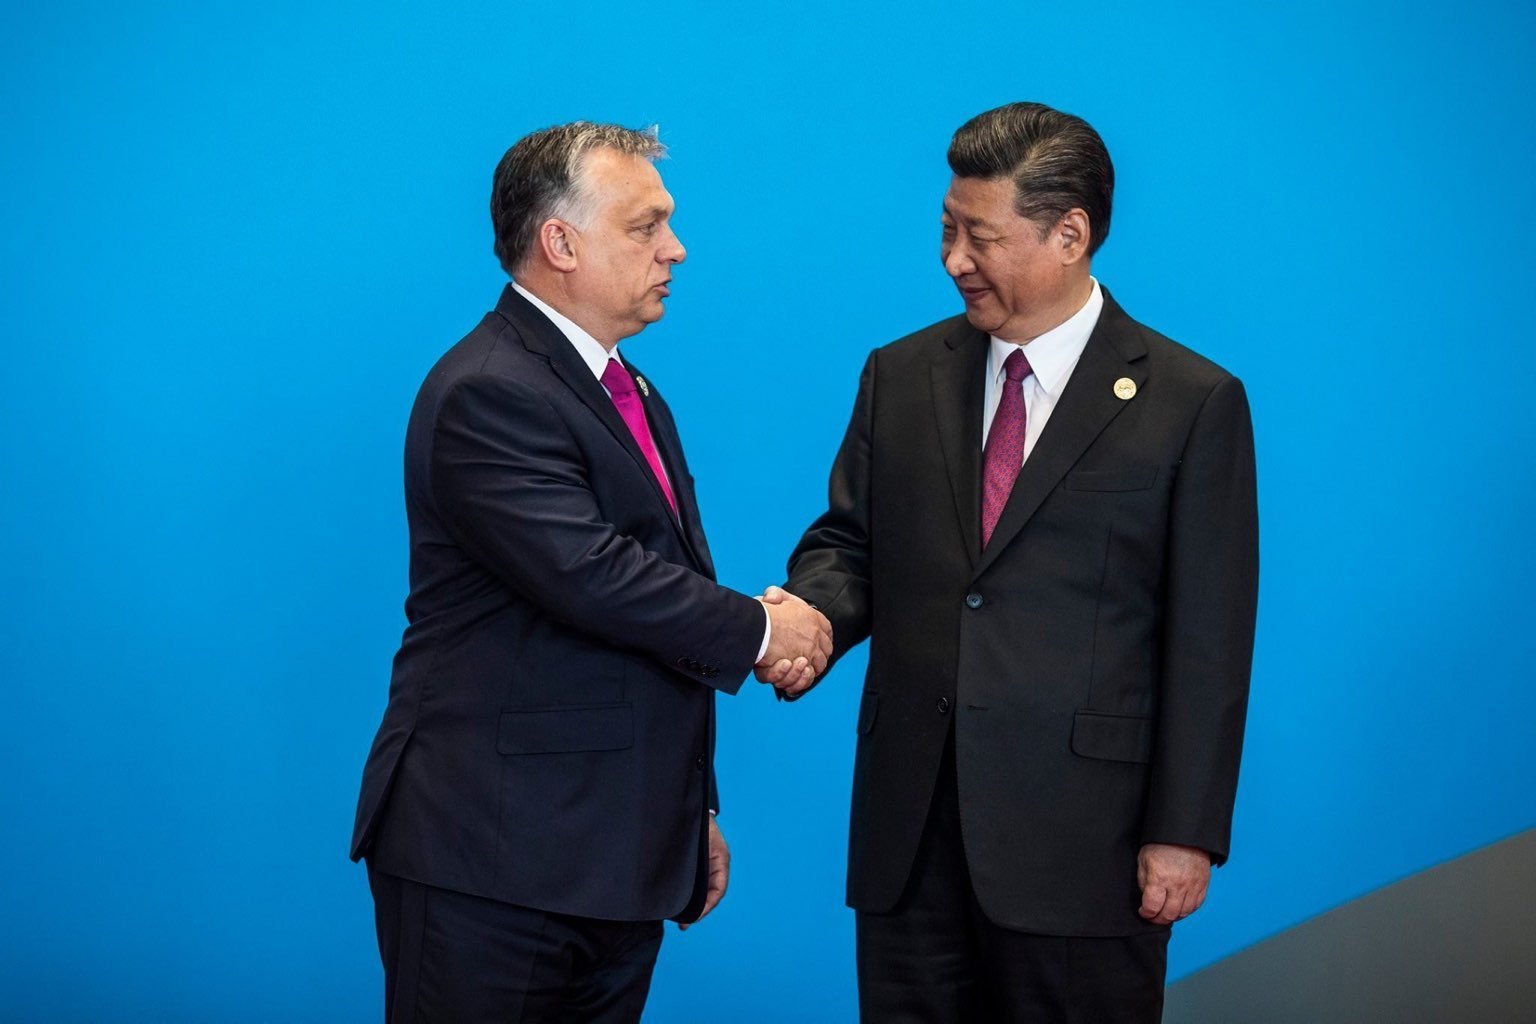 Çin, Budapeşte Fudan'ın kendisi için çok önemli olduğunu söyledi.  Orbán hükümeti artık kendi iyiliği için her şeyi alt üst etti.